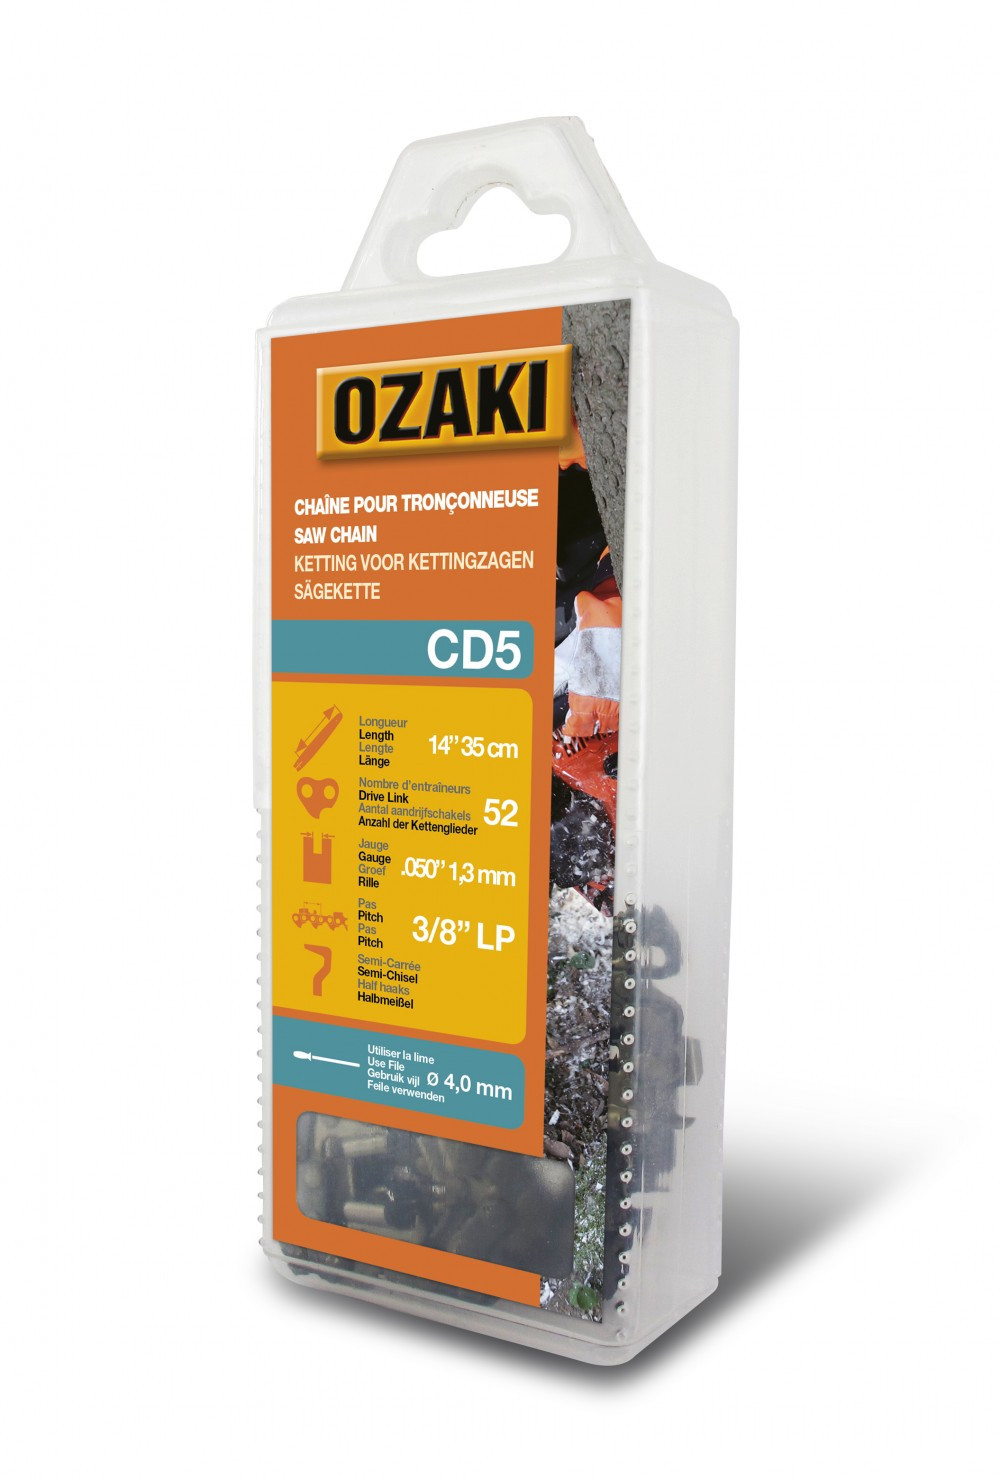 Chaîne de tronçonneuse OZAKI semi carrée: .3/8"LP .050 (1,3mm) 52 entraîneurs